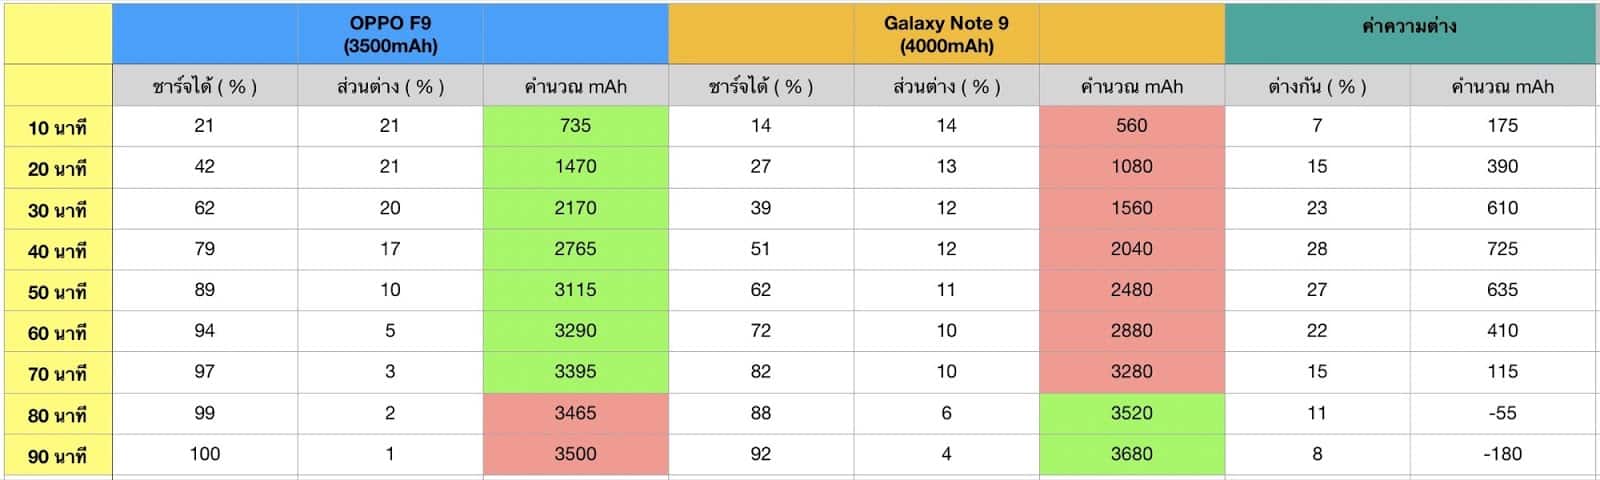 ทดสอบระบบชาร์จเร็ว VOOC บน OPPO F9 เทียบกับ Galaxy Note 9 25